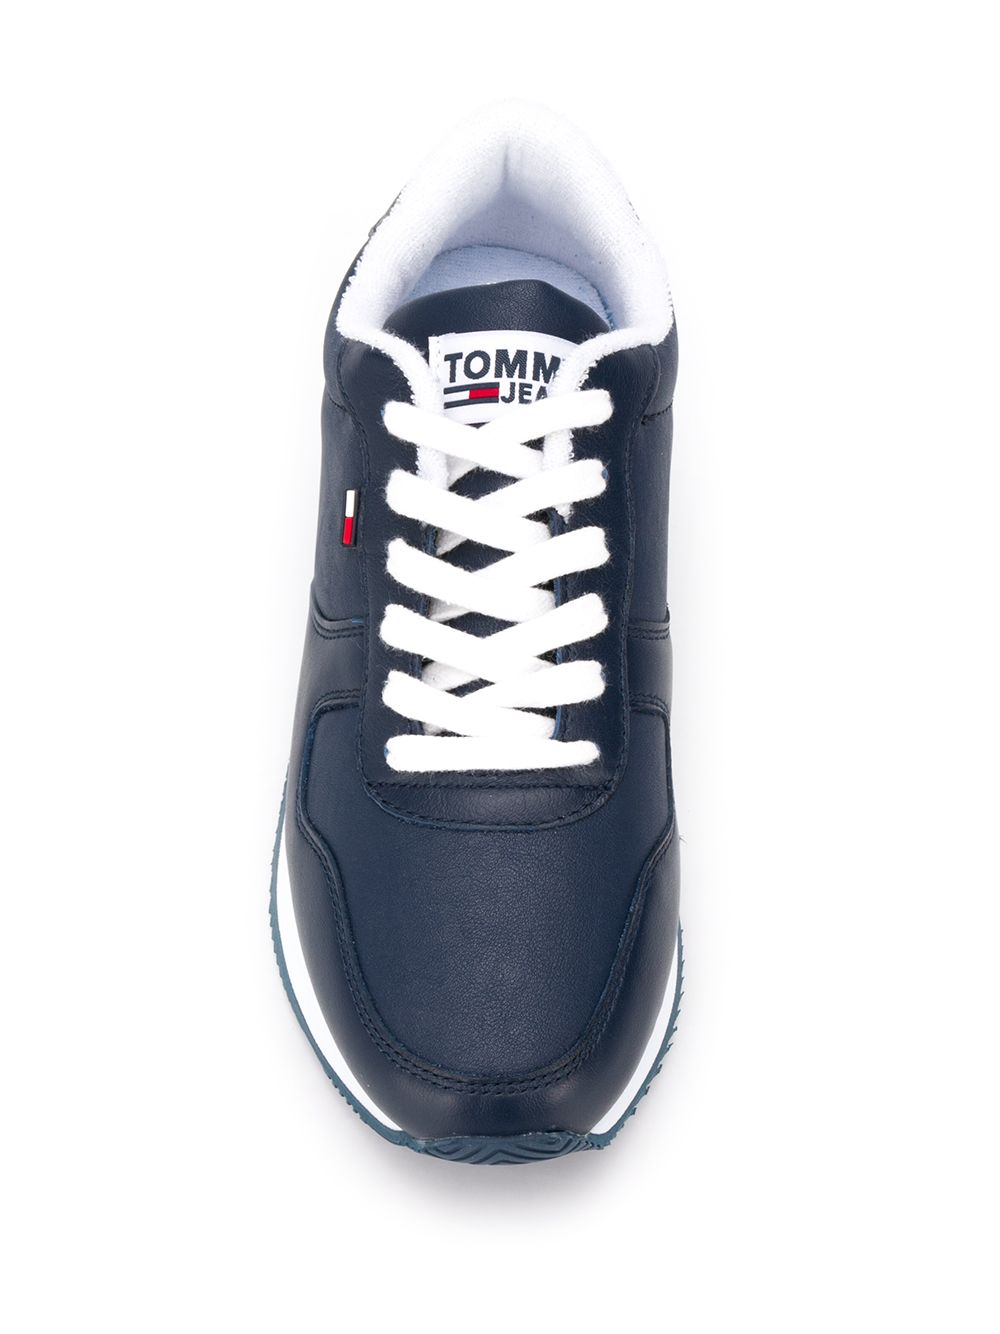 tomm sneaker shop